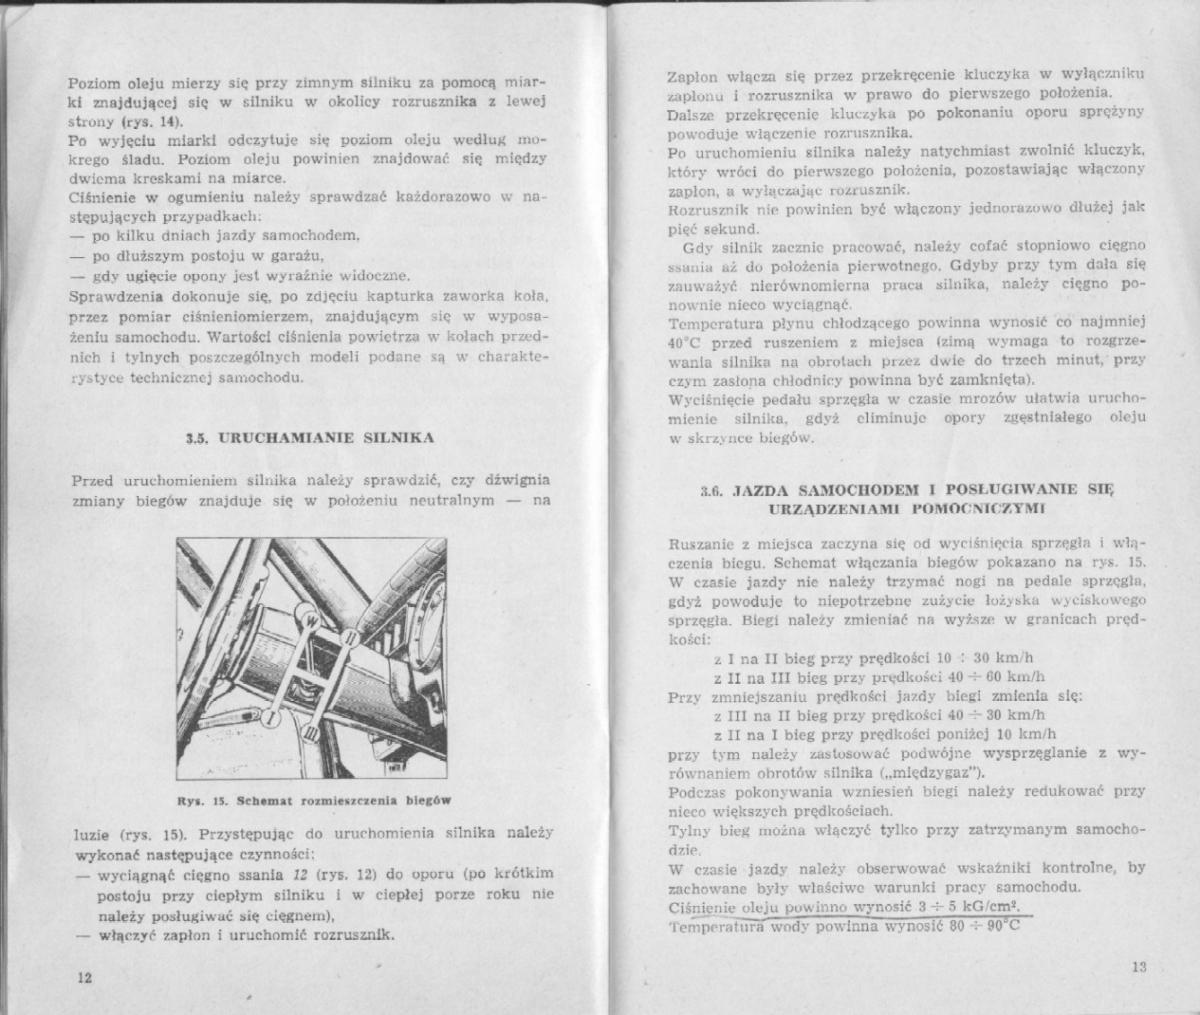 FSO Warszawa instrukcja obslugi / page 7